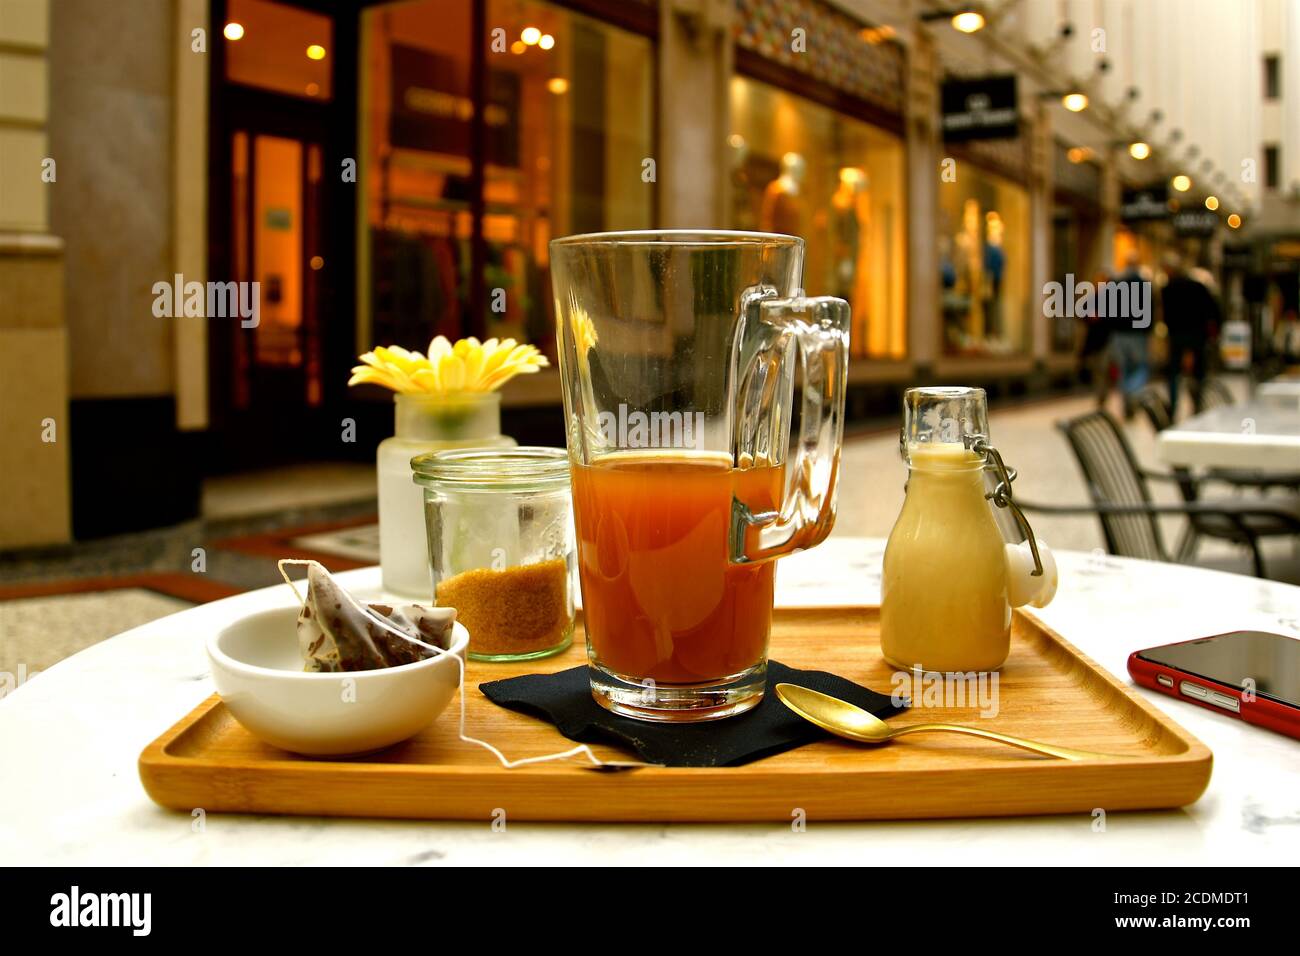 Eine Stillleben Komposition aus einem Tablett mit Kräutertee auf einem Marmortisch in einem vornehmen Café in einem geschlossenen Einkaufsboulevard. Stockfoto